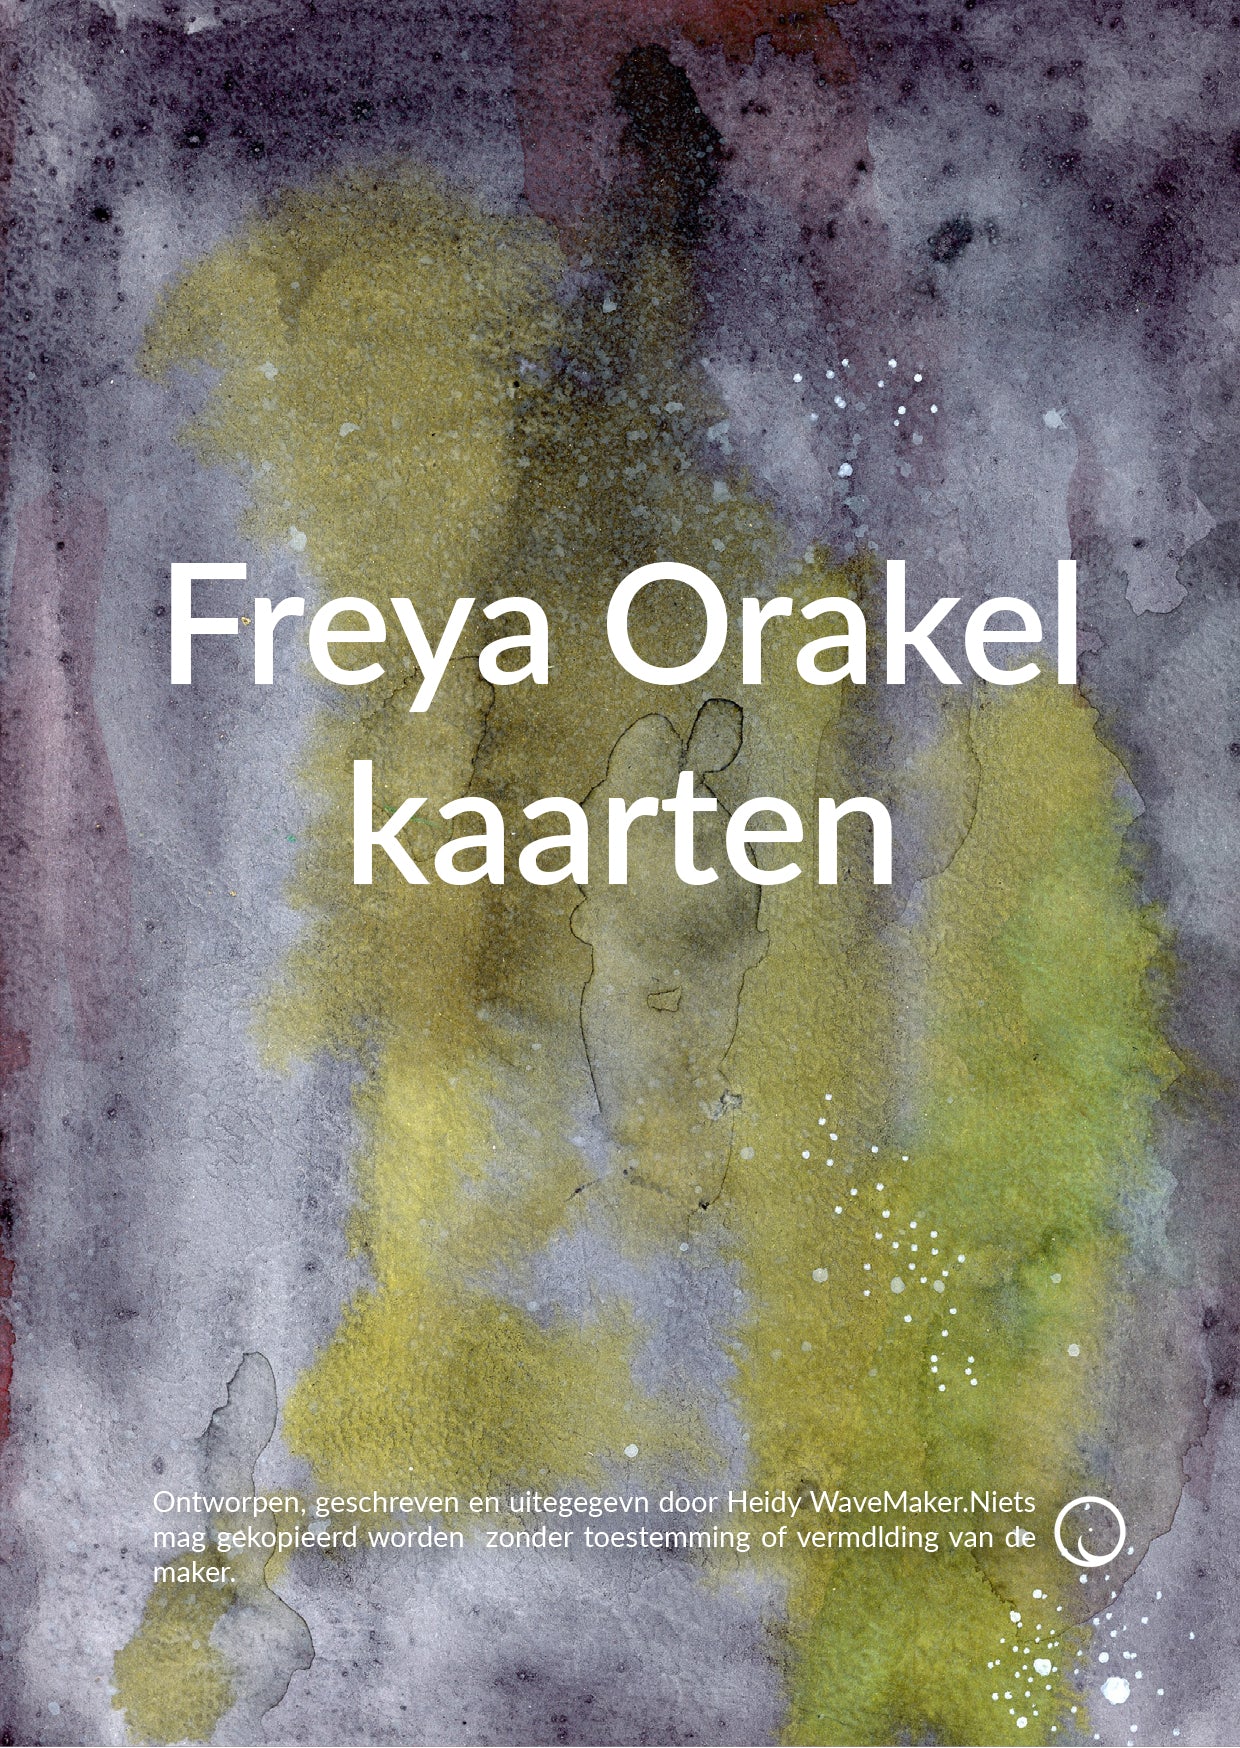 Freya Orakel kaarten